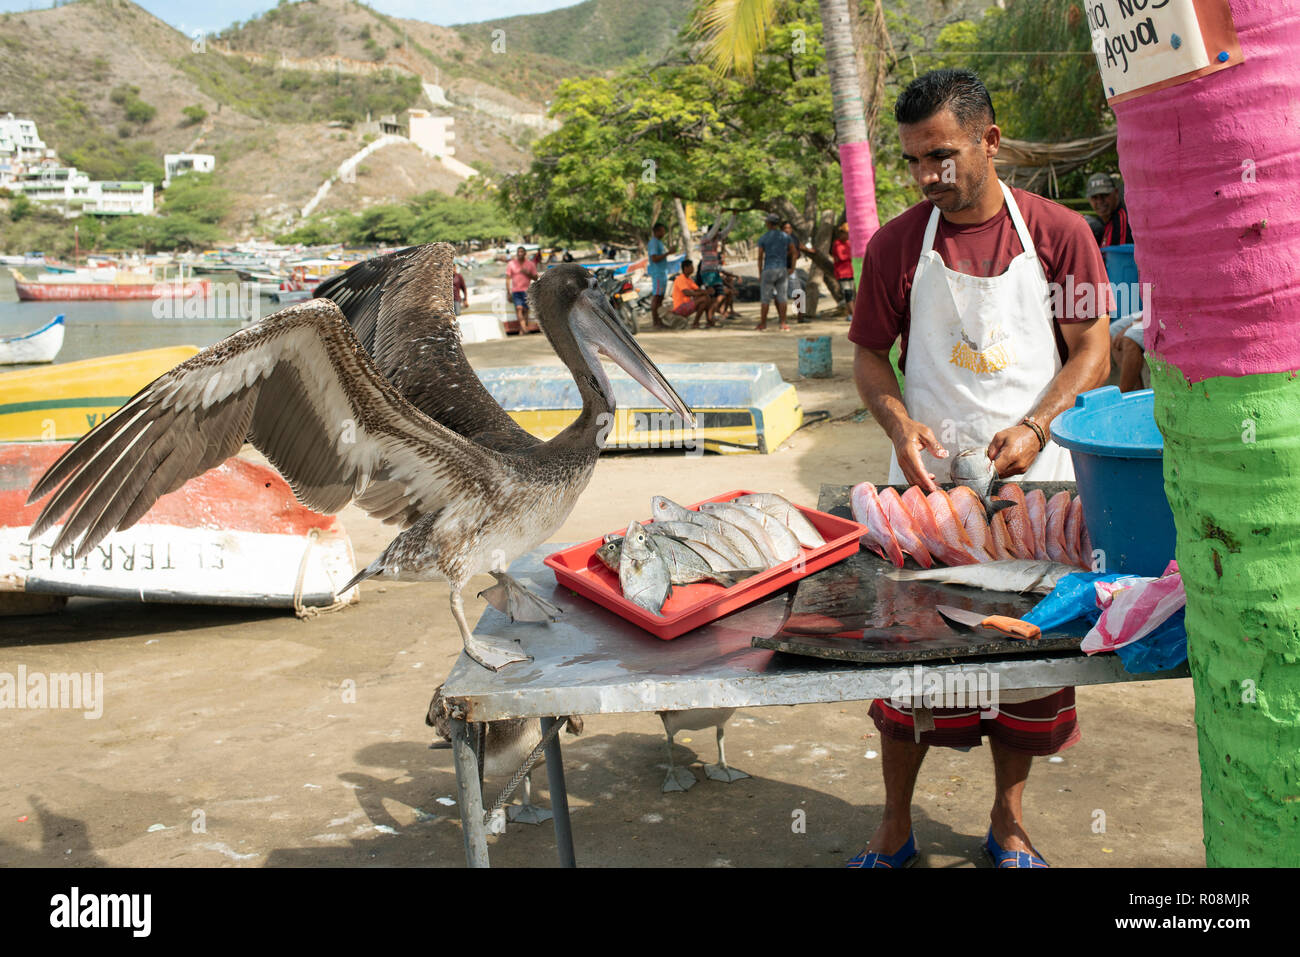 Fisherman preparando para la venta de pescado fresco, un tanto impertinente pelican está esperando las tripas. La vida costera en Taganga, Santa Marta, Colombia. Sep 2018 Foto de stock